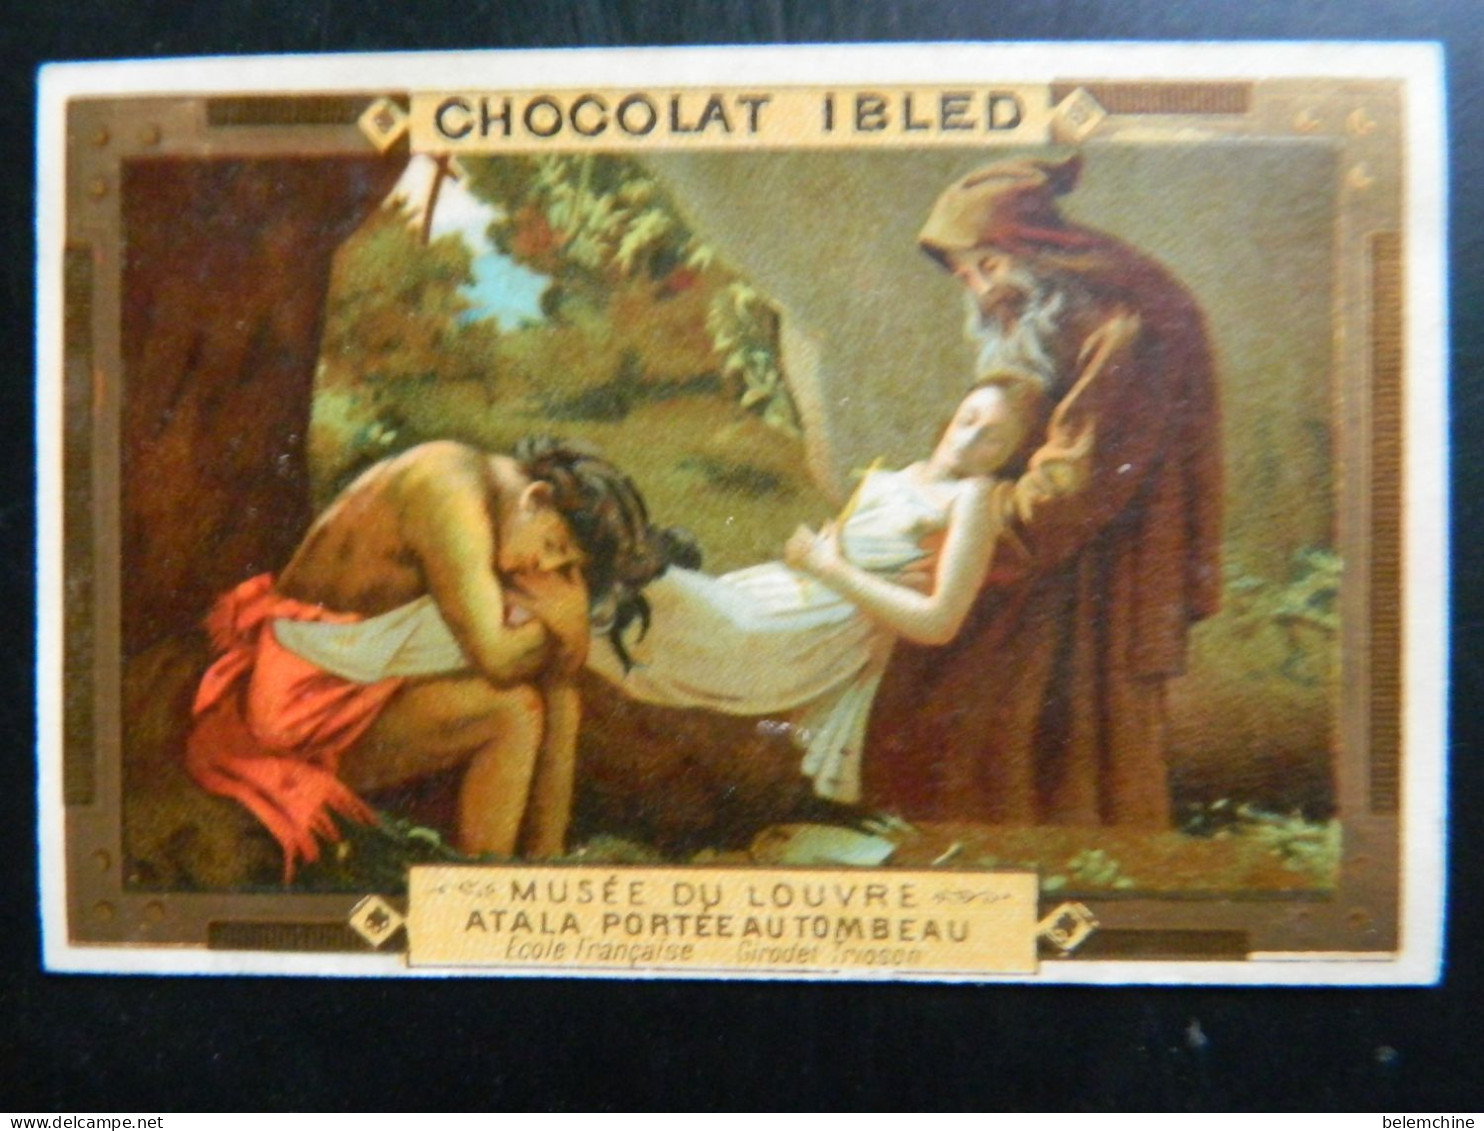 CHROMO  CHOCOLAT IBLED     ( 10,5  X 7   Cms)  MUSEE DU LOUVRE   ATALA PORTEE AU TOMBEAU - Ibled